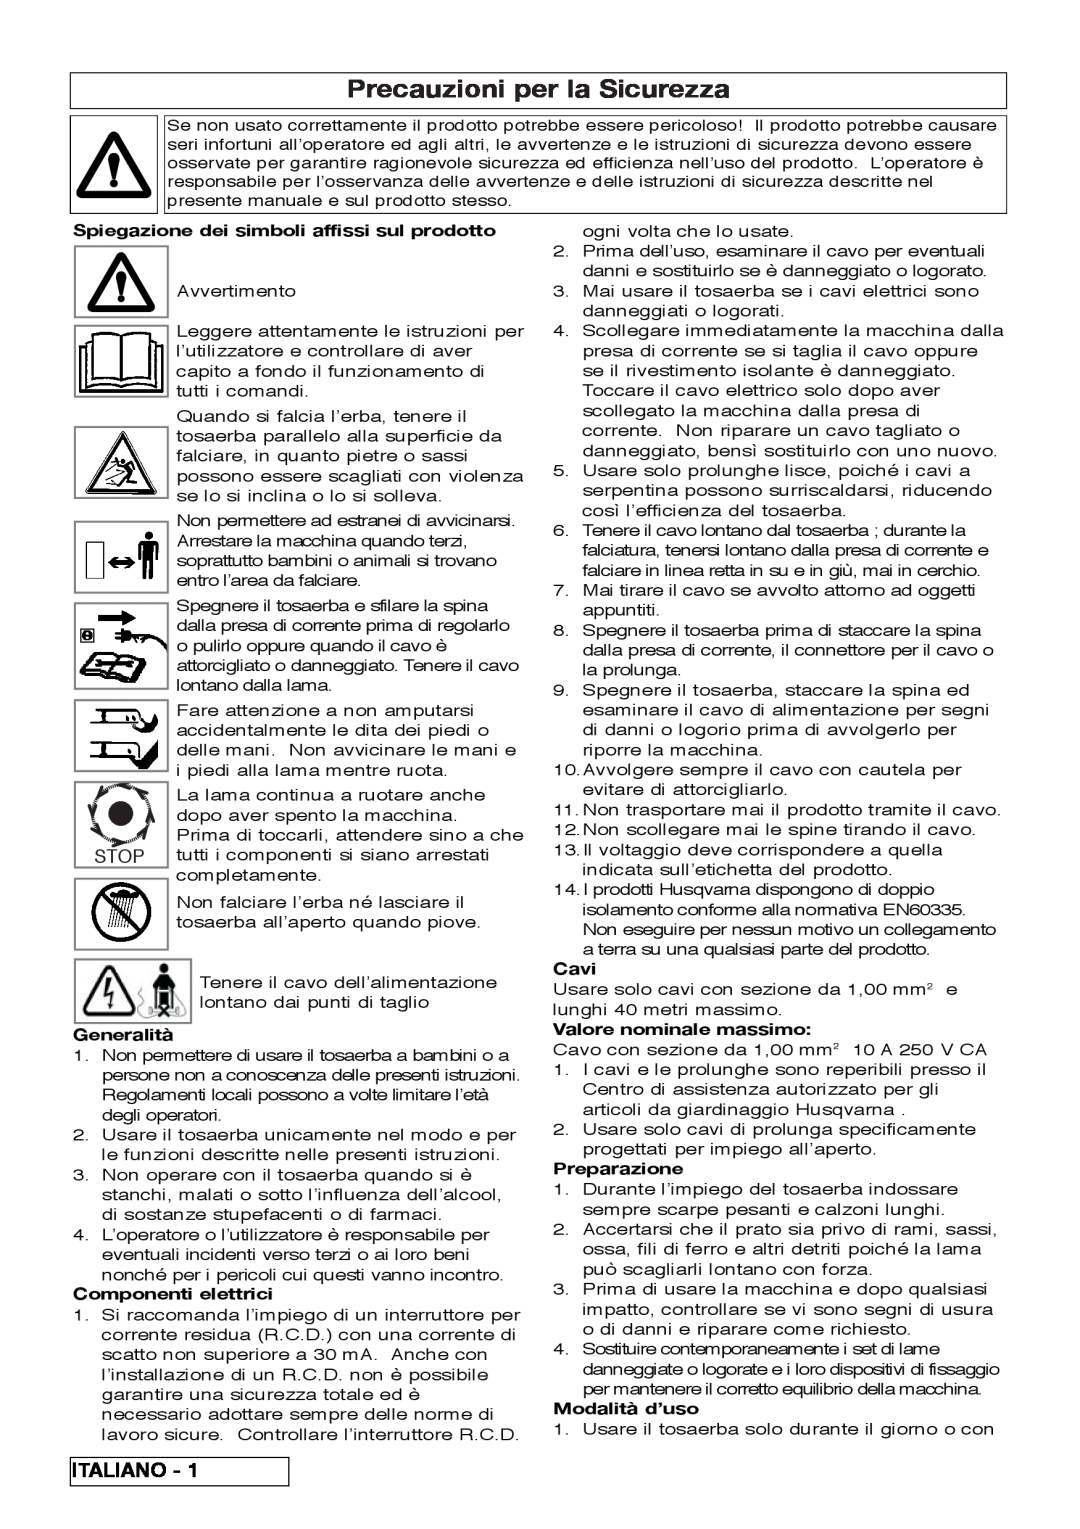 Flymo VM032 manual Precauzioni per la Sicurezza, Italiano, Spiegazione dei simboli affissi sul prodotto, Generalità, Cavi 